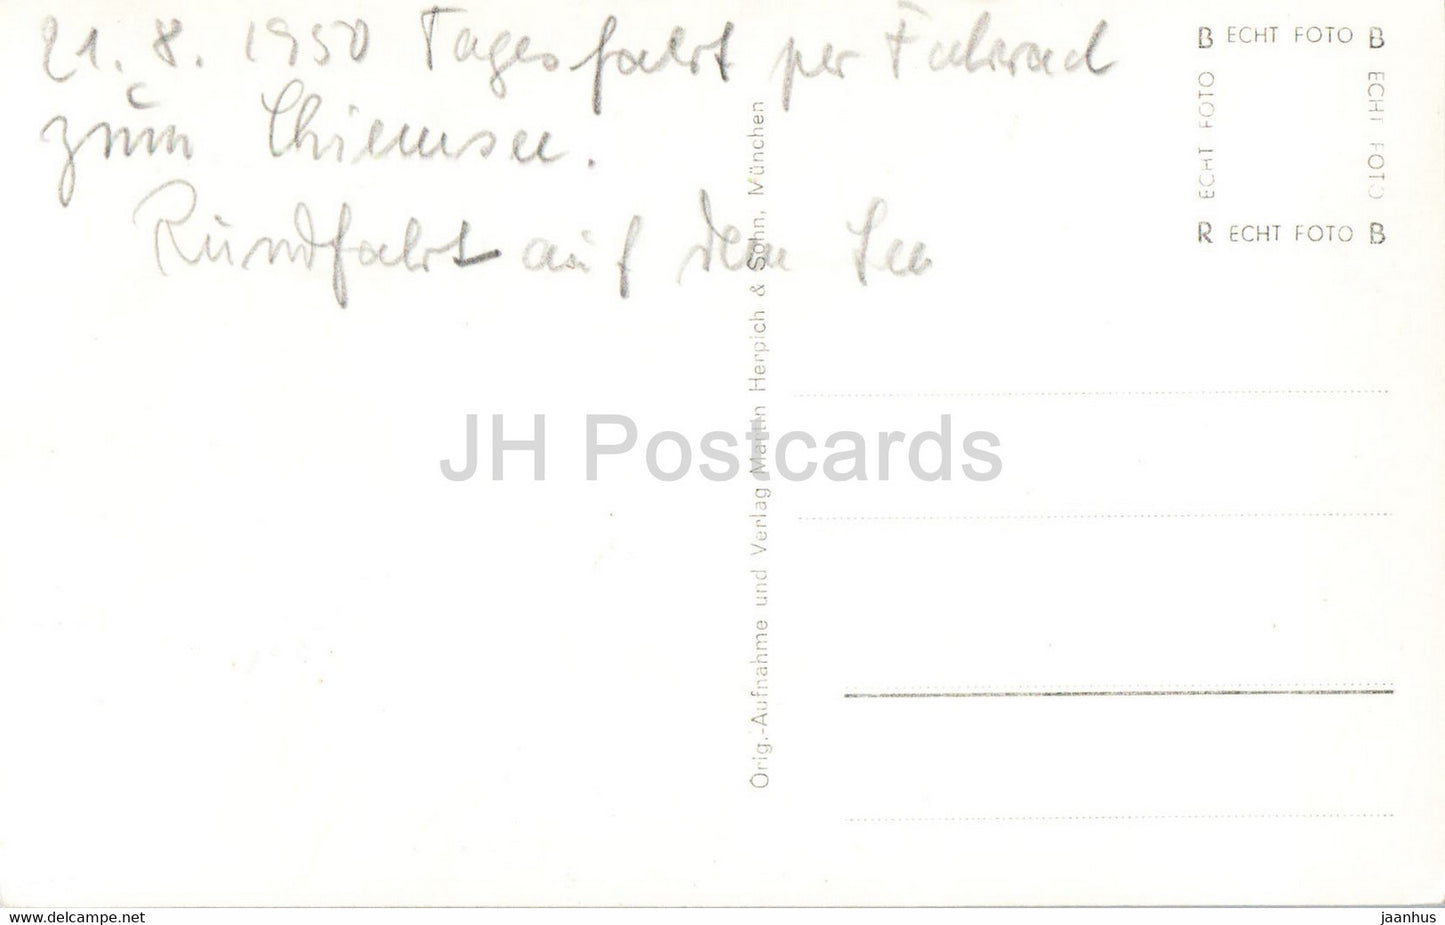 Herreninsel i Chiemsee - 159 - alte Postkarte - 1950 - Deutschland - gebraucht